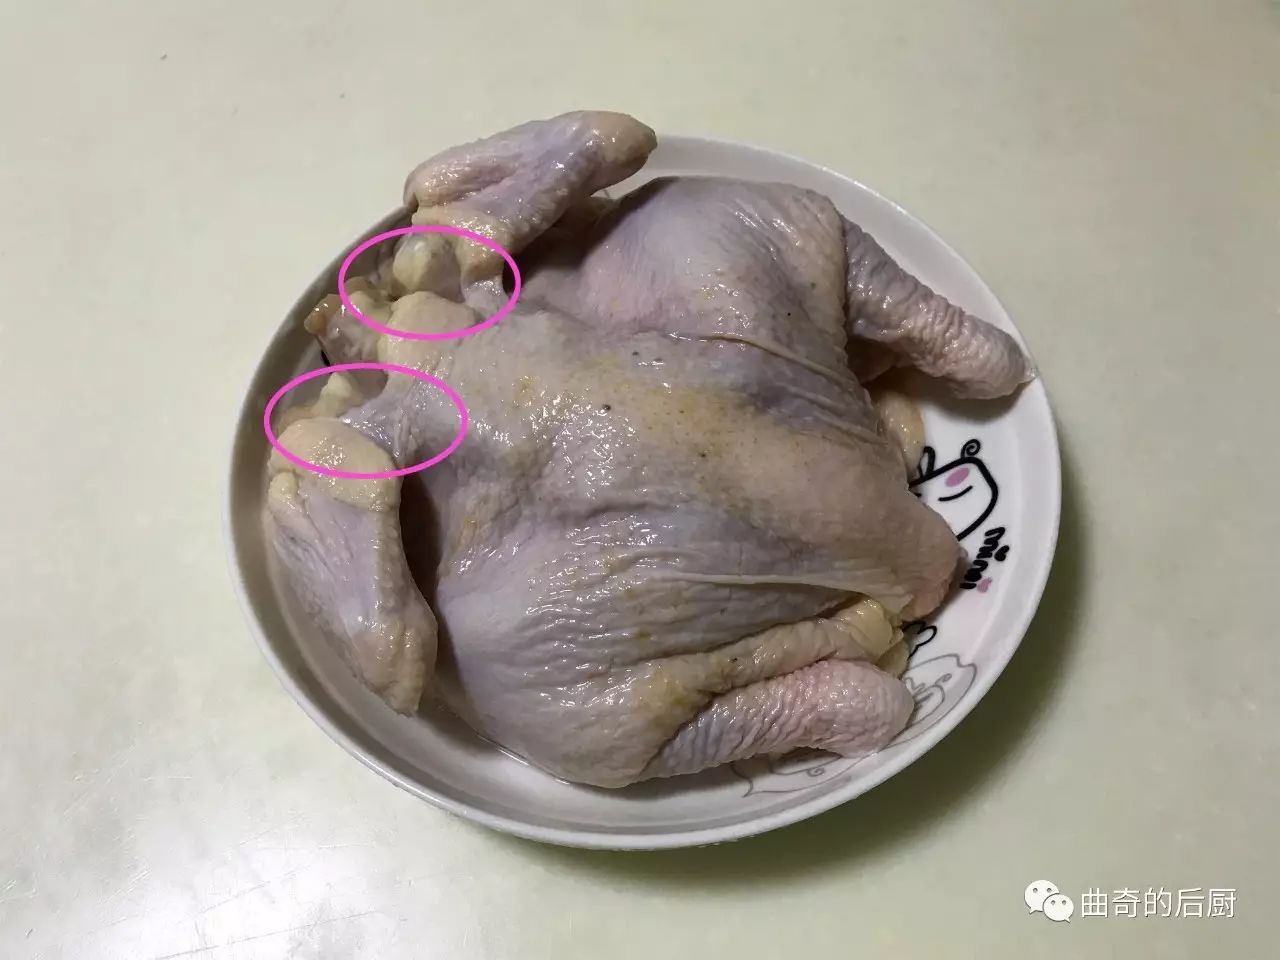 要注意的是, 鸡脖子两边的鸡皮下面(图中红圈部分)肥油和淋巴比较